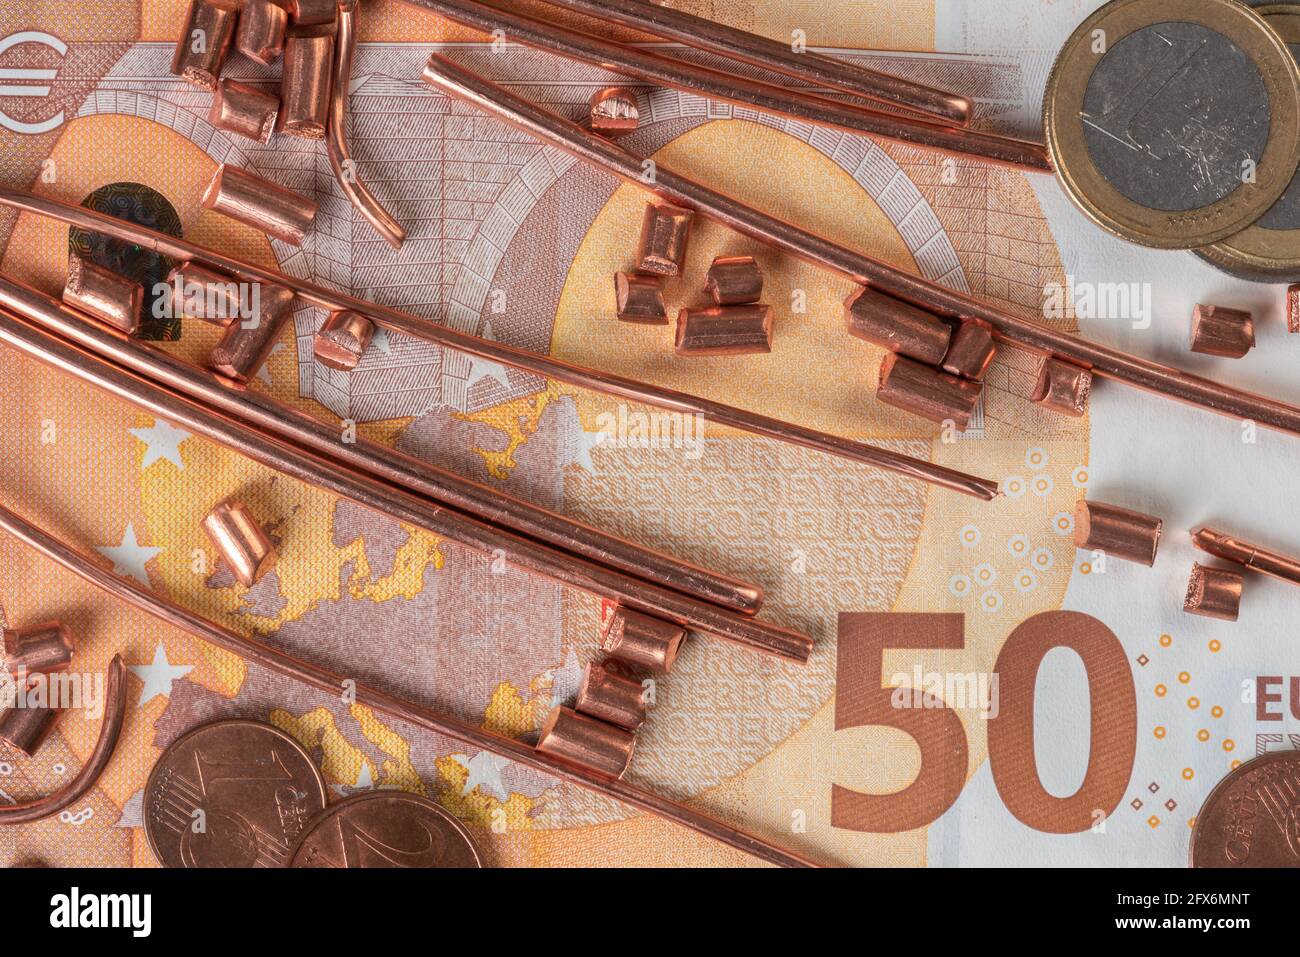 50-Euro-Banknote, Münzen und Schrott von Kupferdraht Draufsicht, Handel und Investitionen in Rohstoffe Konzept Stockfoto